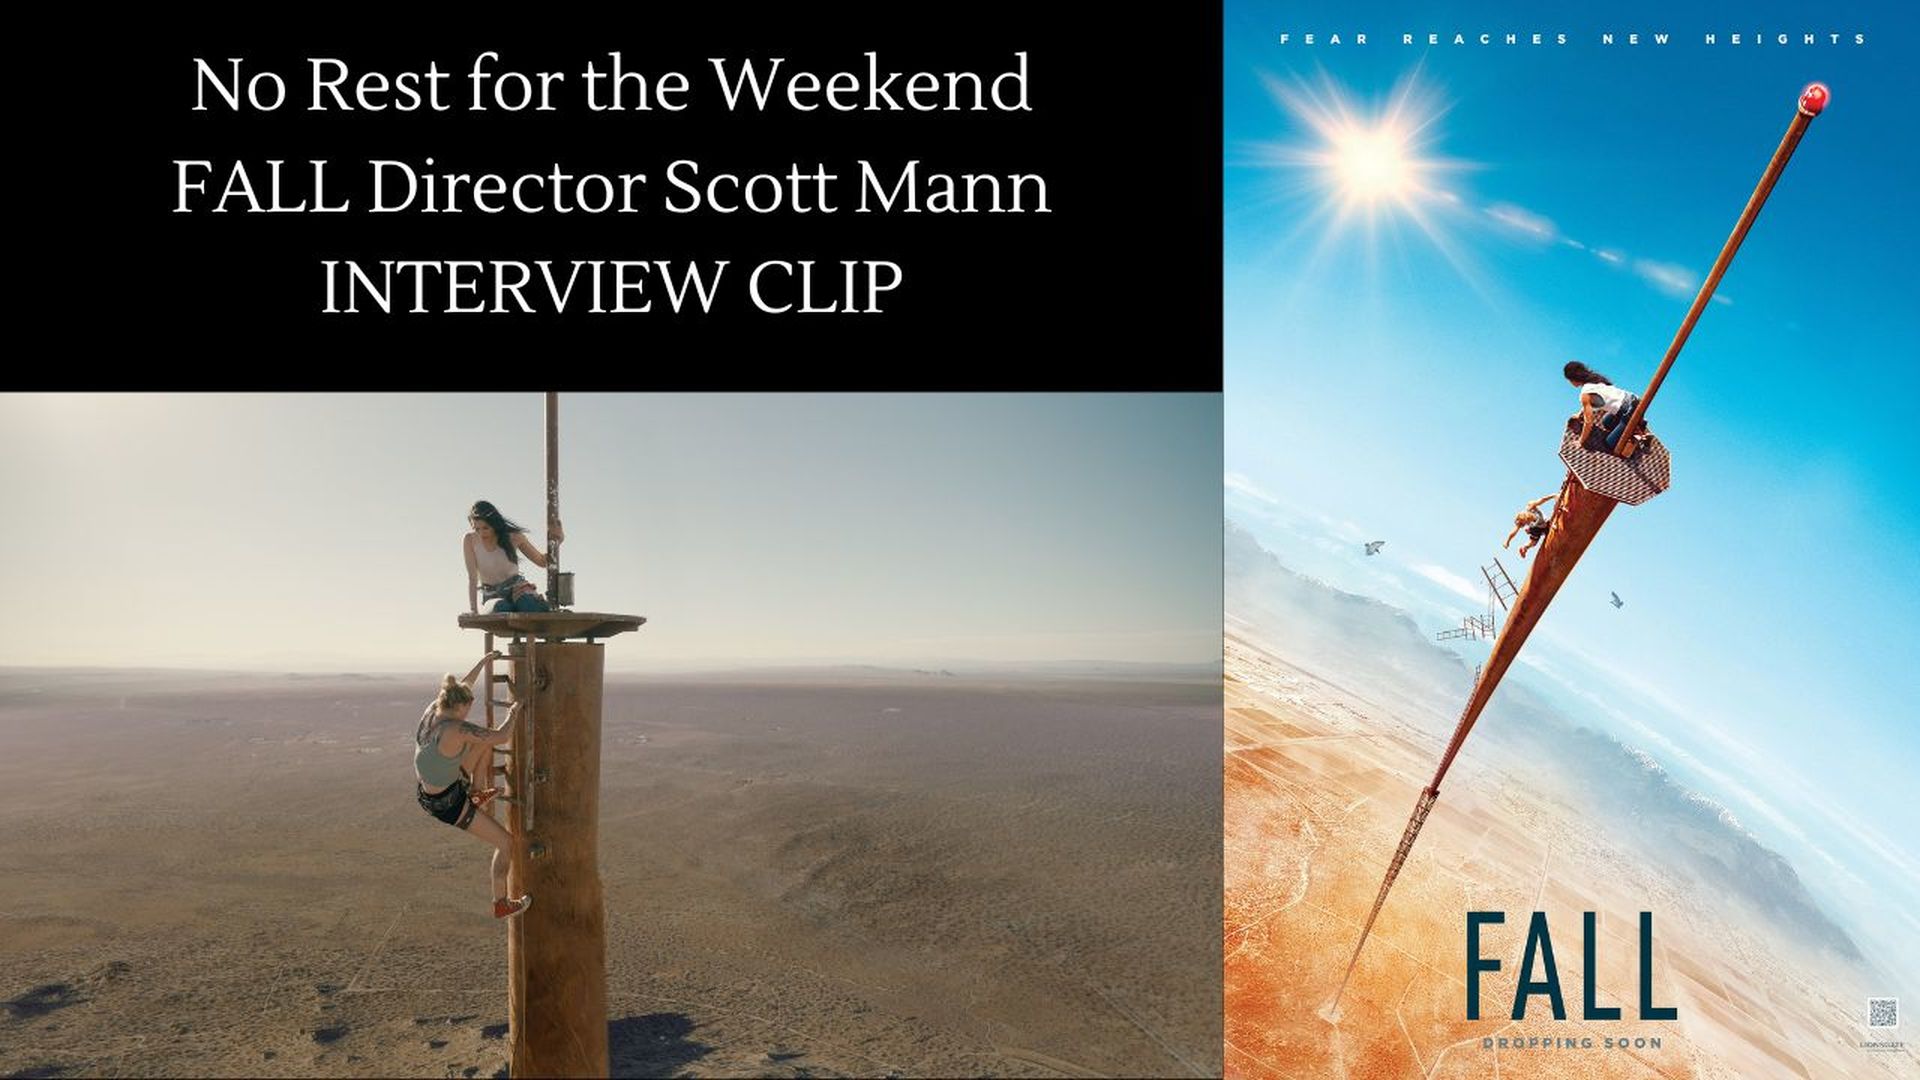 FALL Director Scott Mann Interview Clip